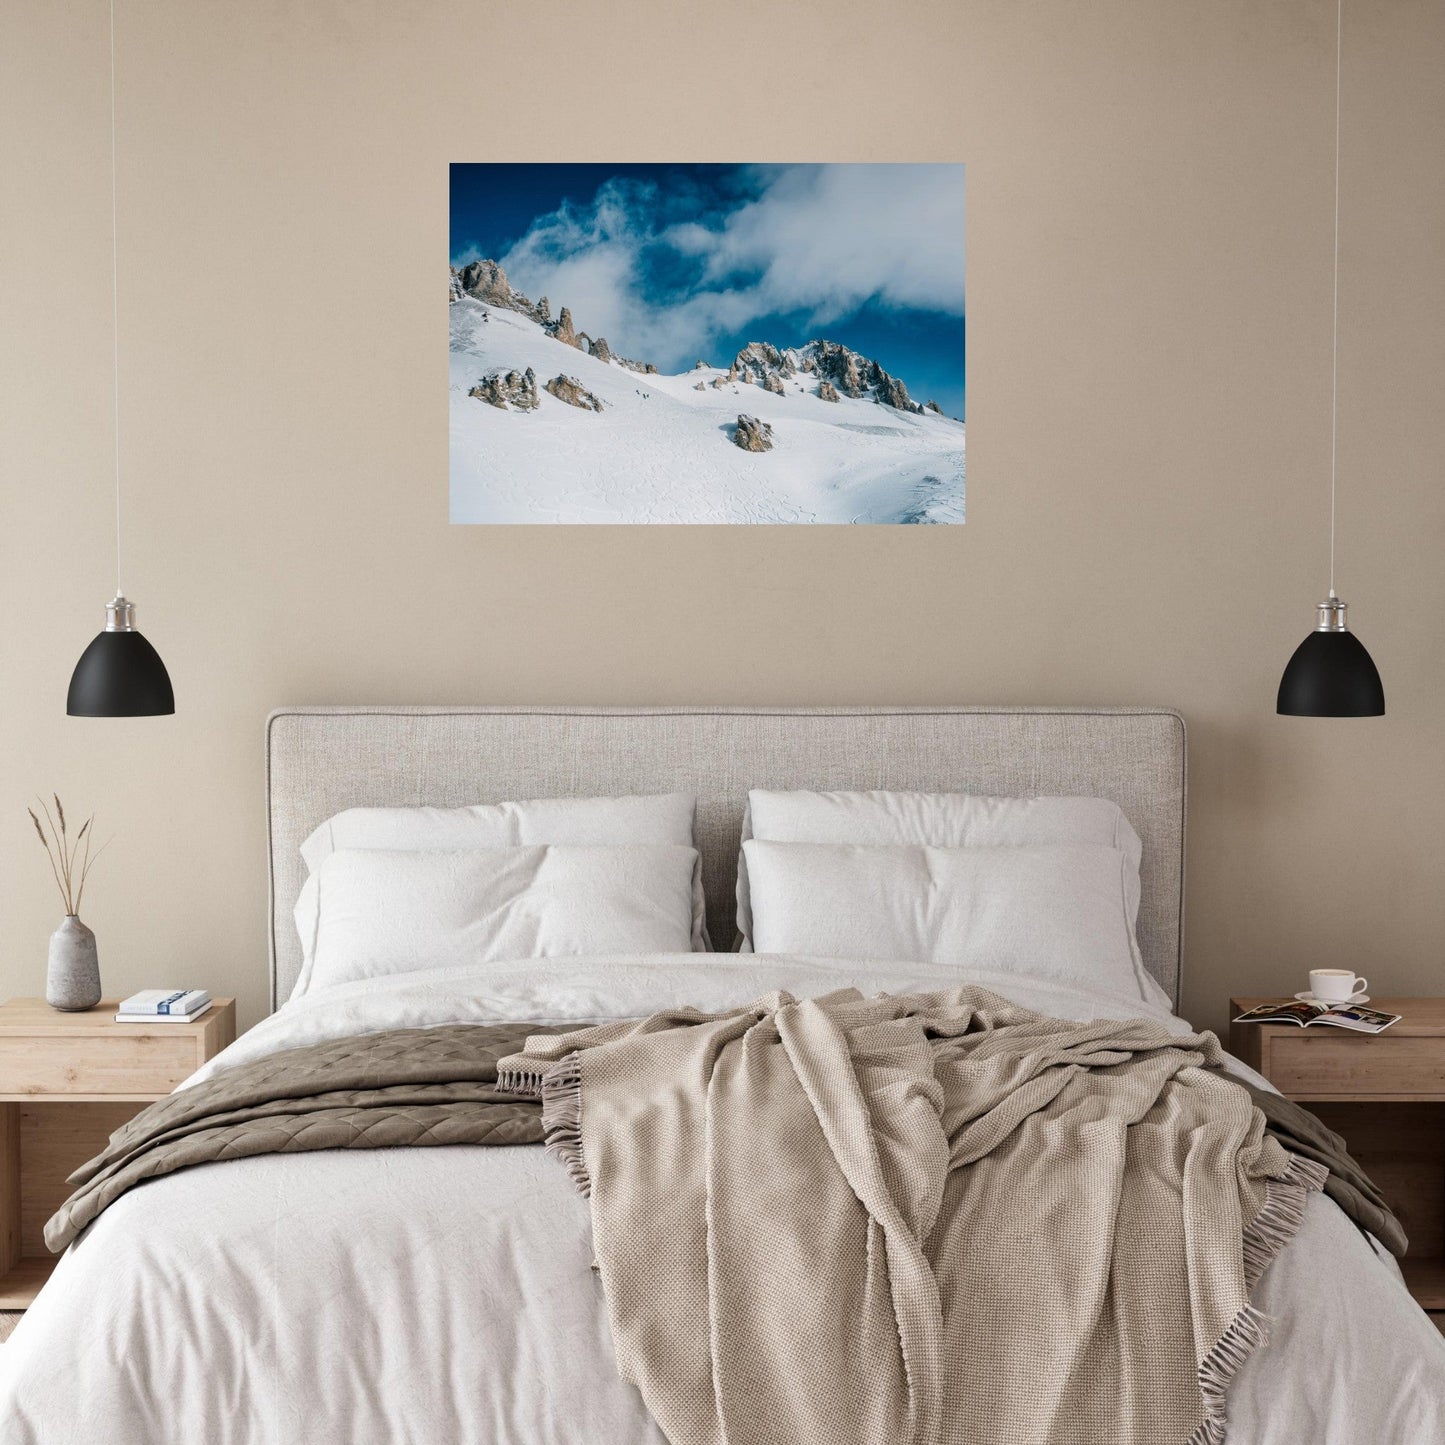 Vente Photo de Tignes en hiver, massif de la Vanoise #2 - Tableau photo alu montagne